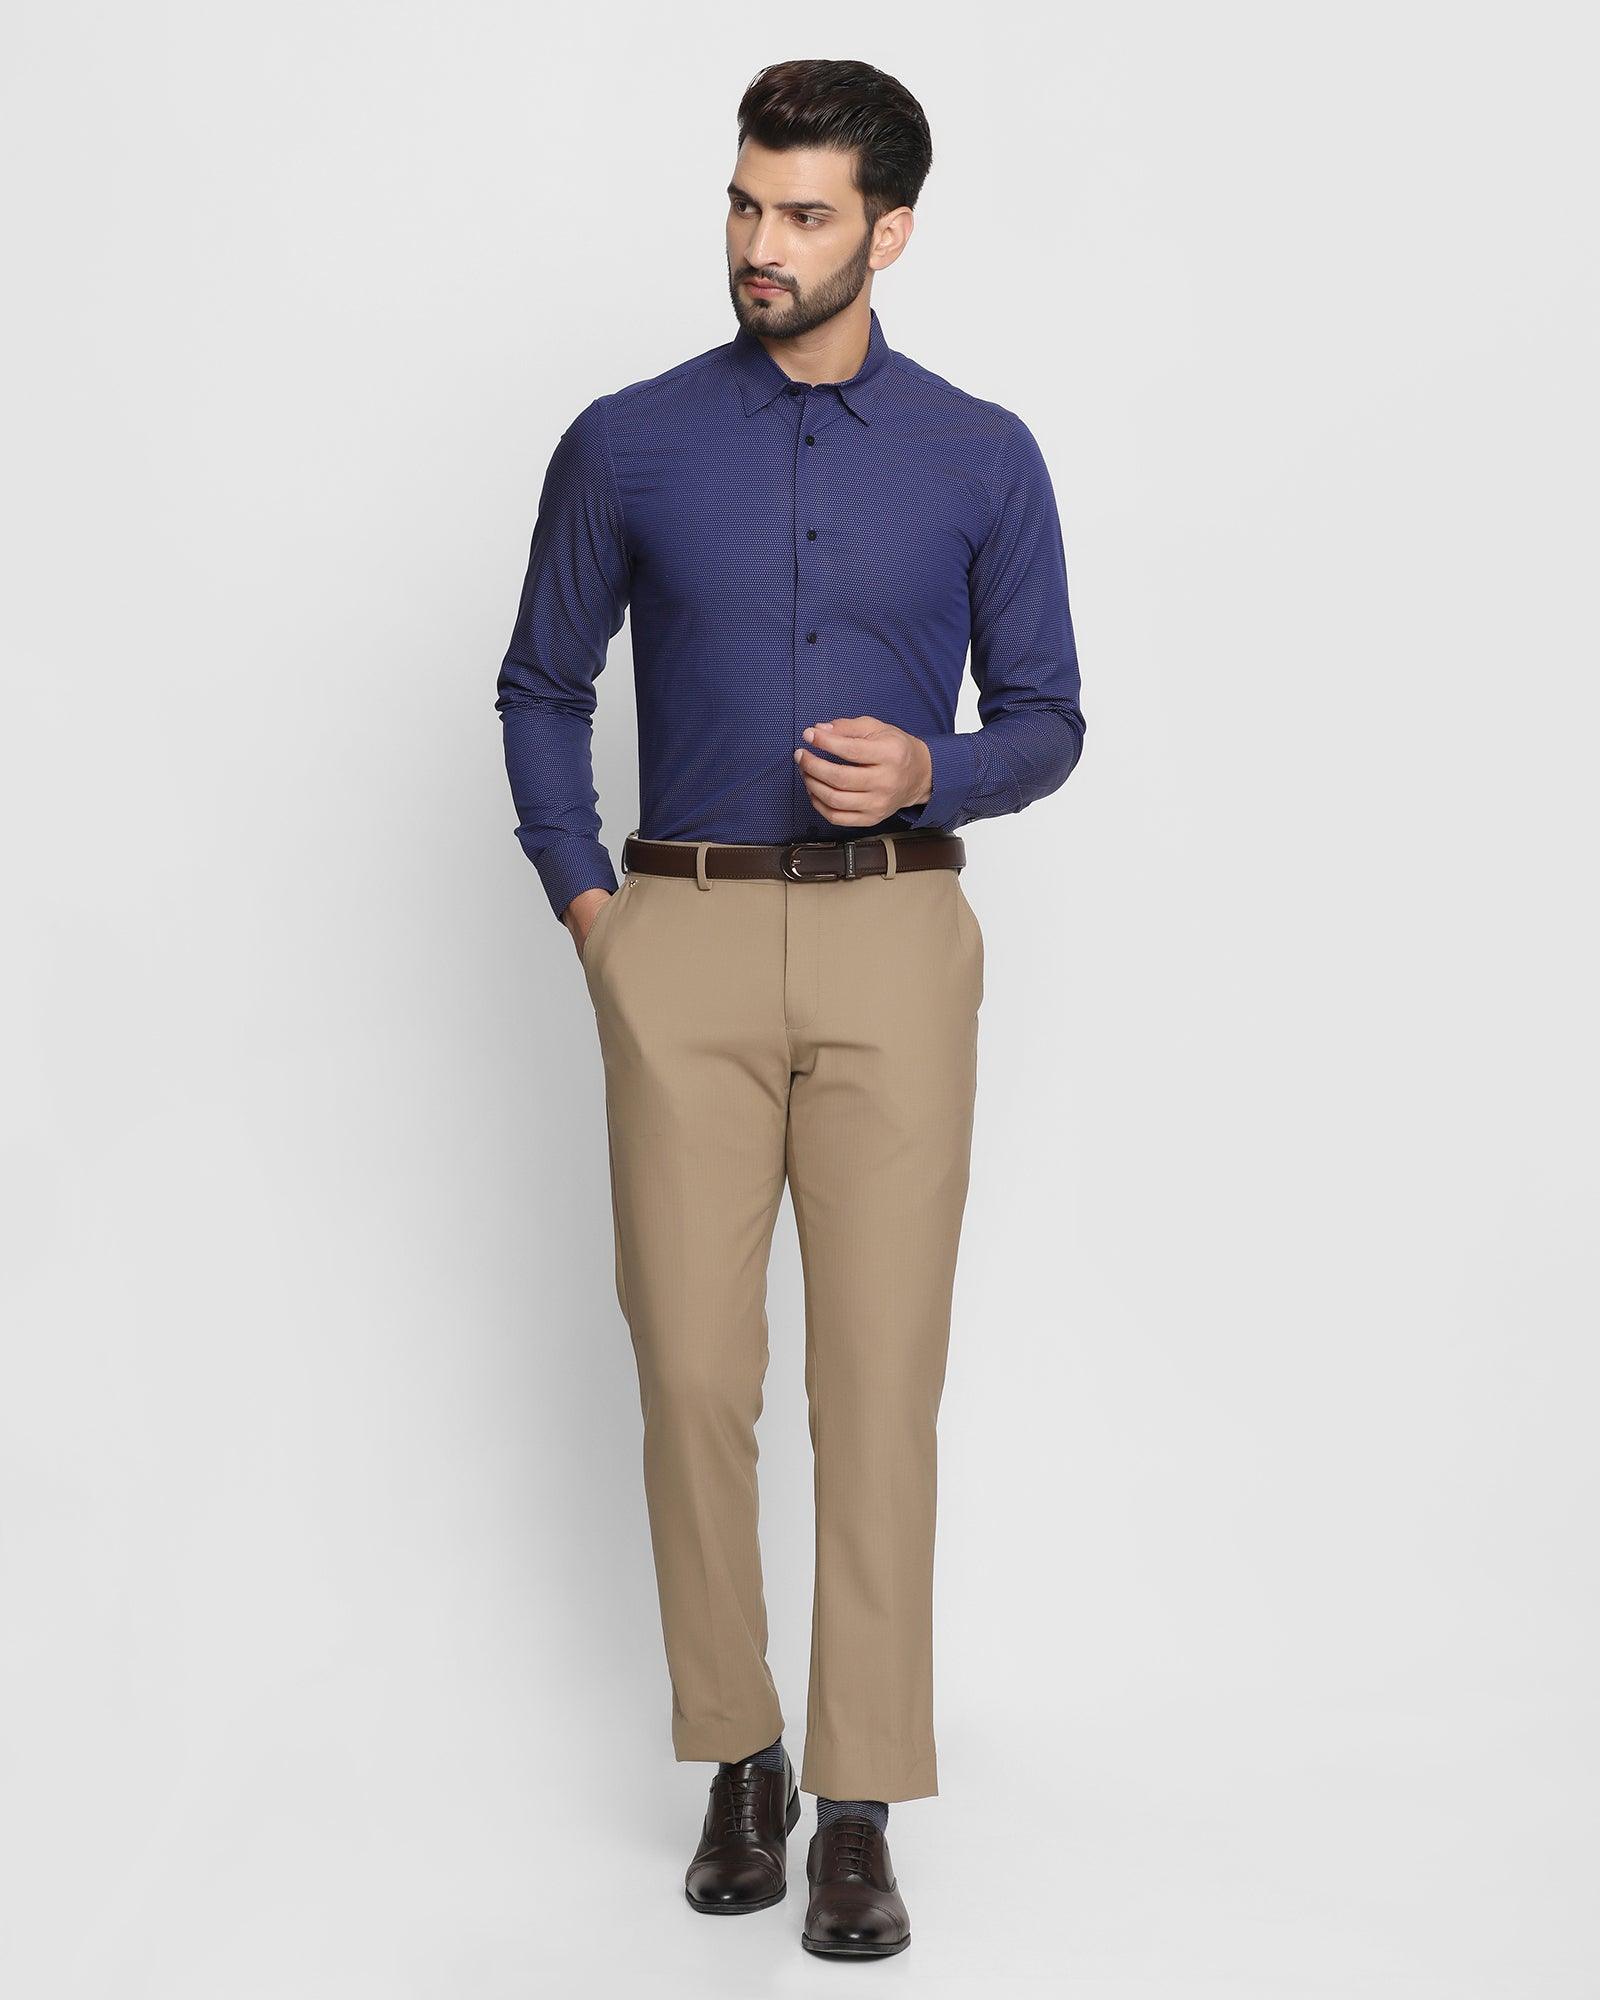 Oxford Blue Linen Shirt With Brown Velvet Detailing on Shoulder & Slee –  archerslounge